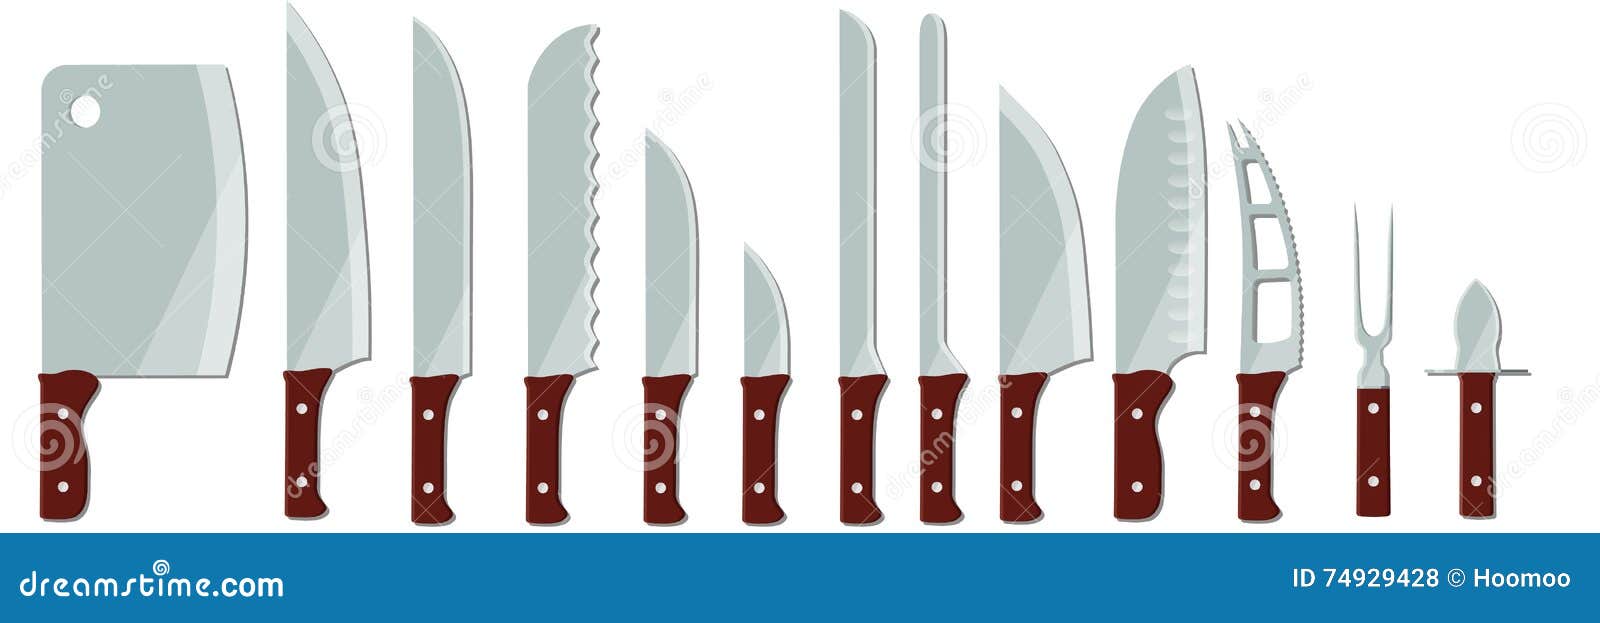 Кухонные Ножи Виды И Назначение Фото